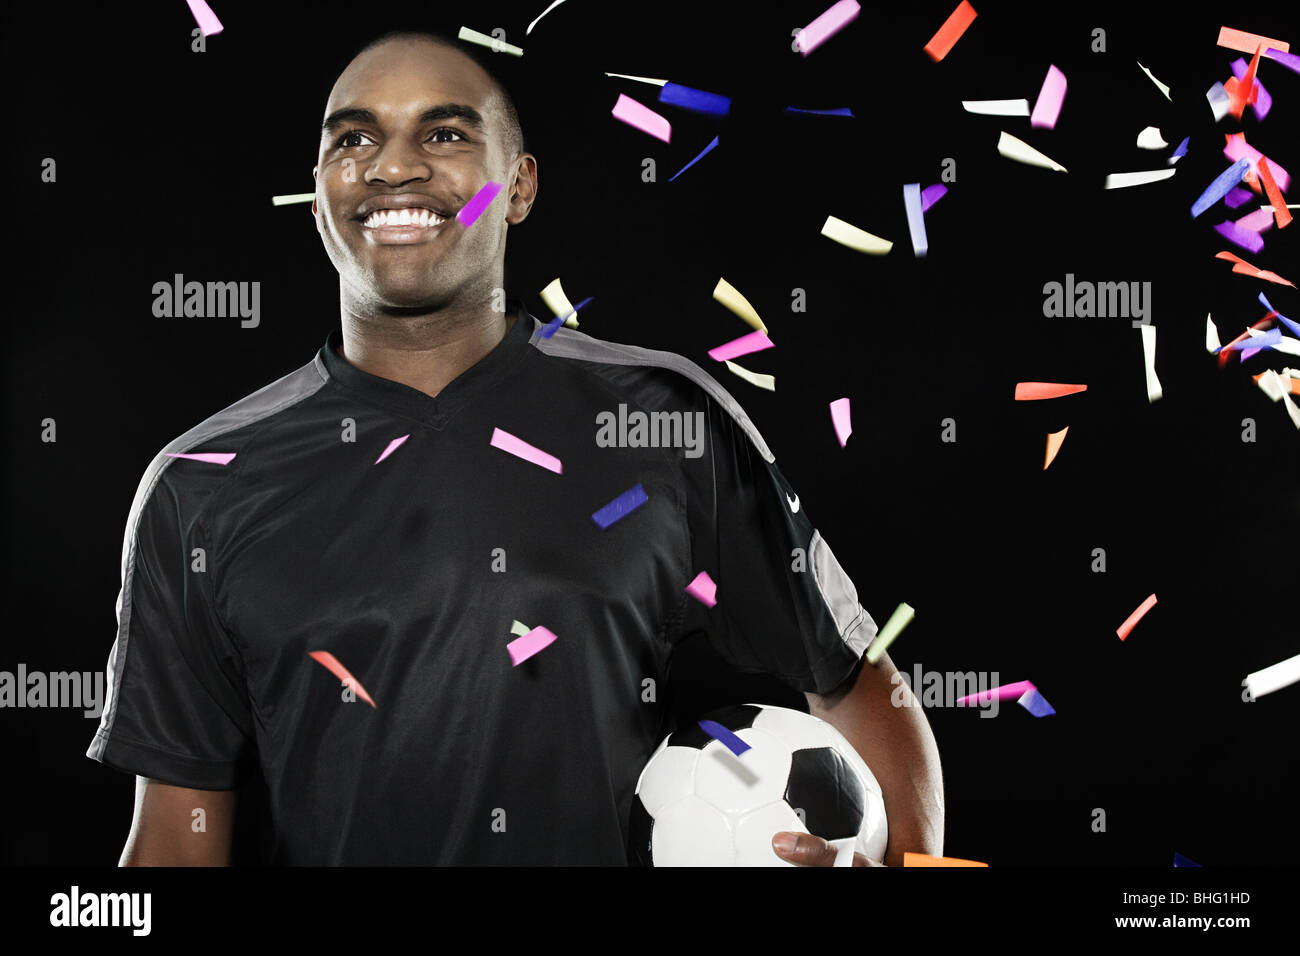 Futbolista con la caída de confeti Foto de stock